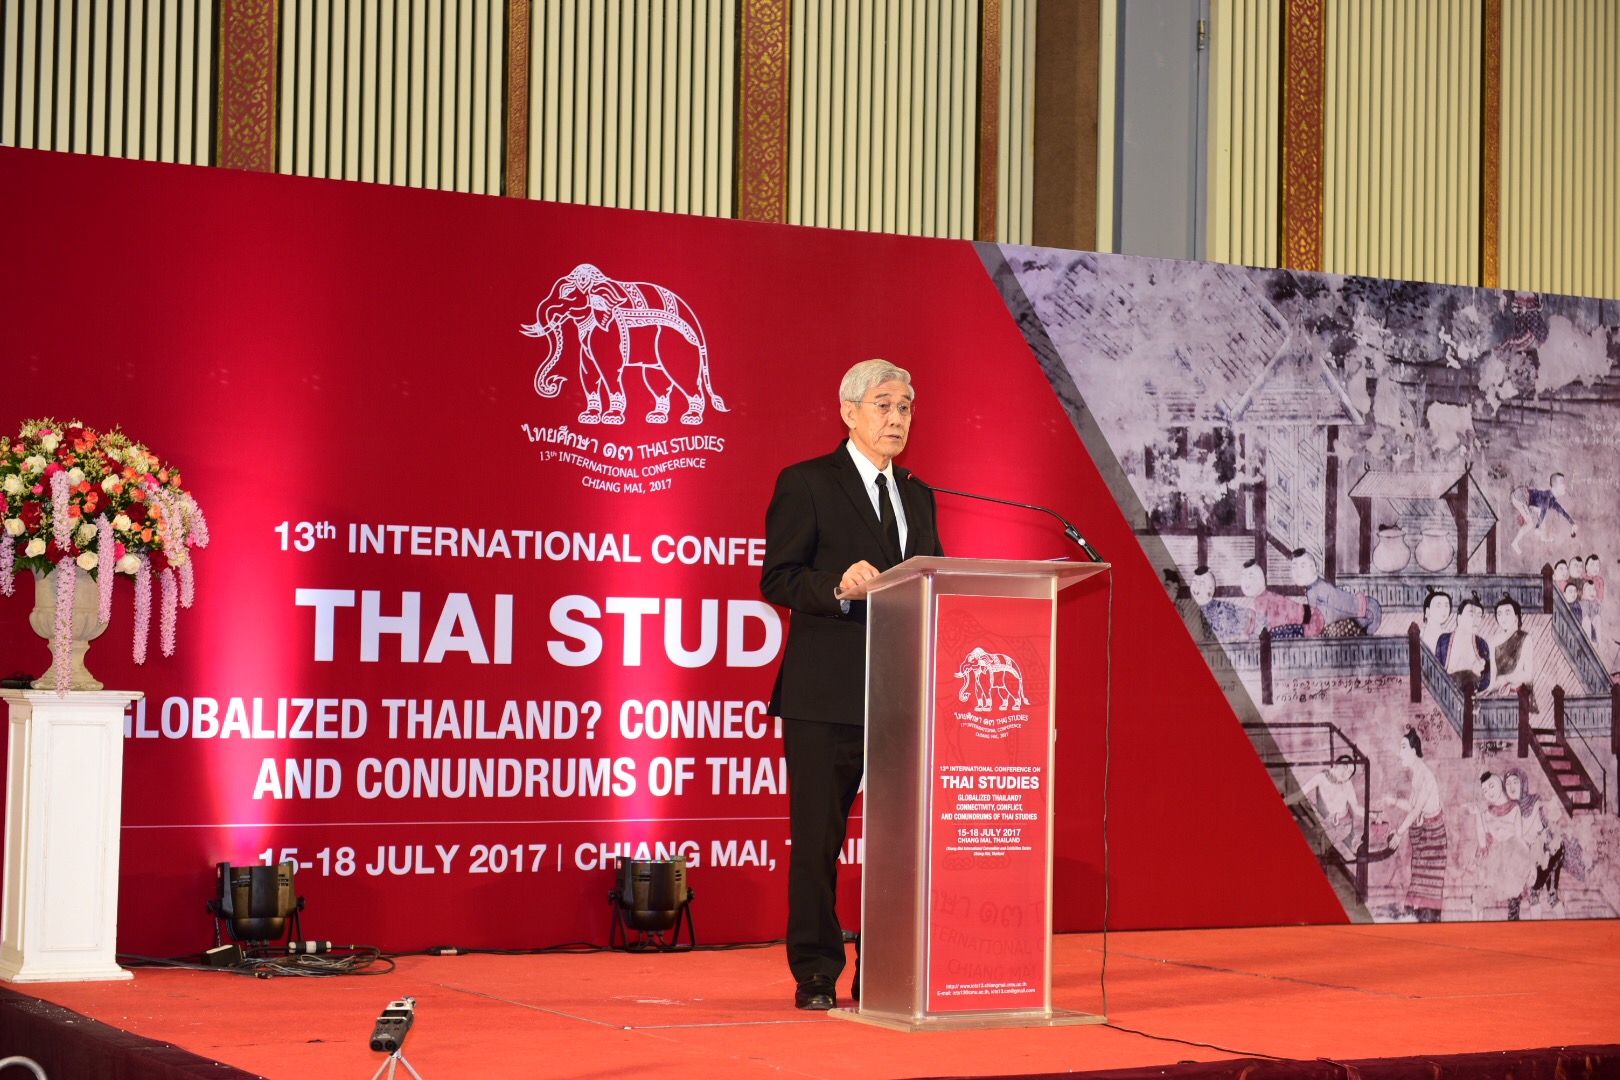 พิธีเปิดการประชุมวิชาการนานาชาติไทยศึกษา ครั้งที่ 13 เมื่อวันที่ 15 กรกฎาคม 2560